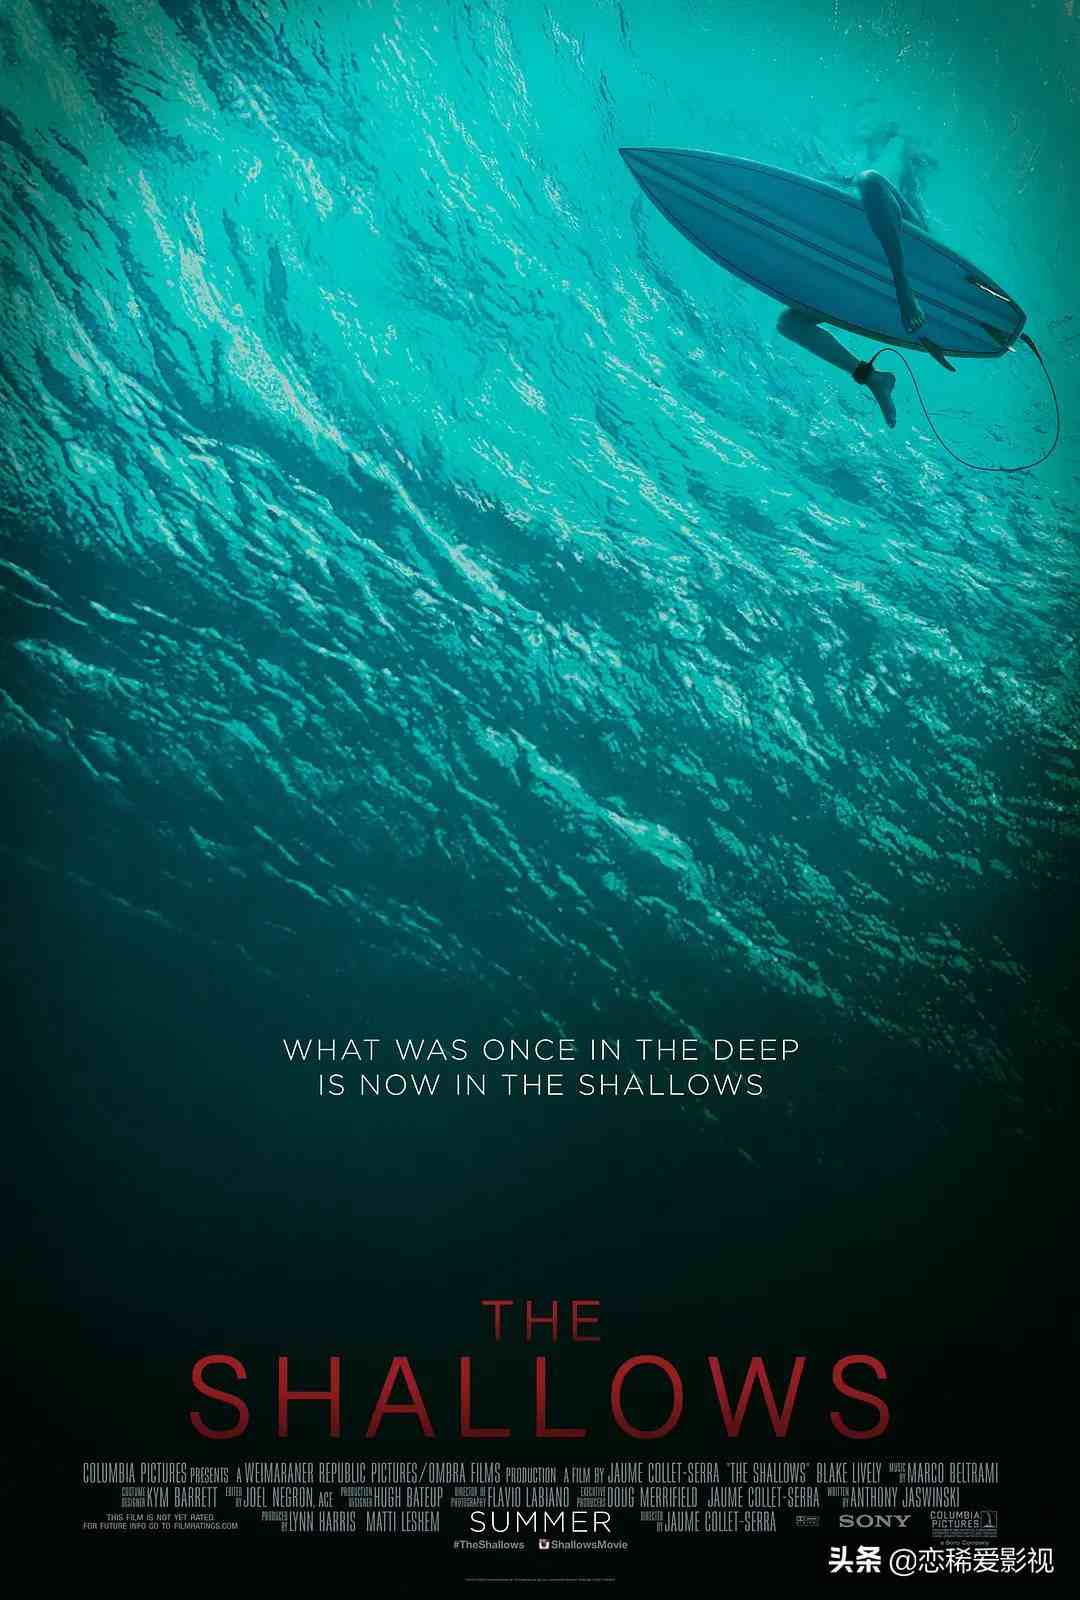 5部与鲨鱼有关的电影，喜欢深海逃生类电影的你不容错过